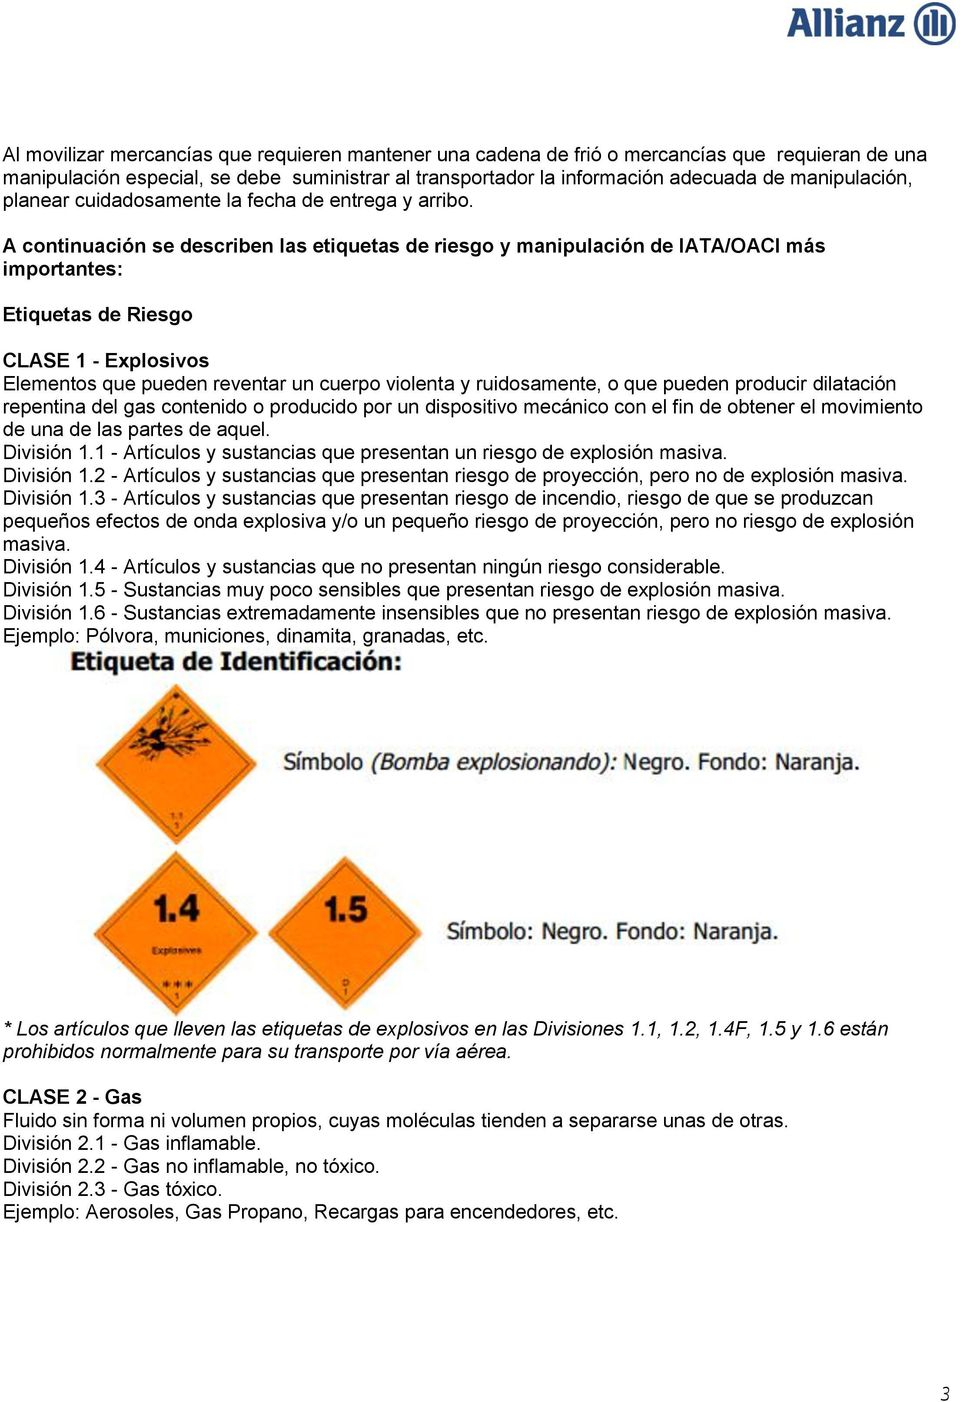 A continuación se describen las etiquetas de riesgo y manipulación de IATA/OACI más importantes: Etiquetas de Riesgo CLASE 1 - Explosivos Elementos que pueden reventar un cuerpo violenta y